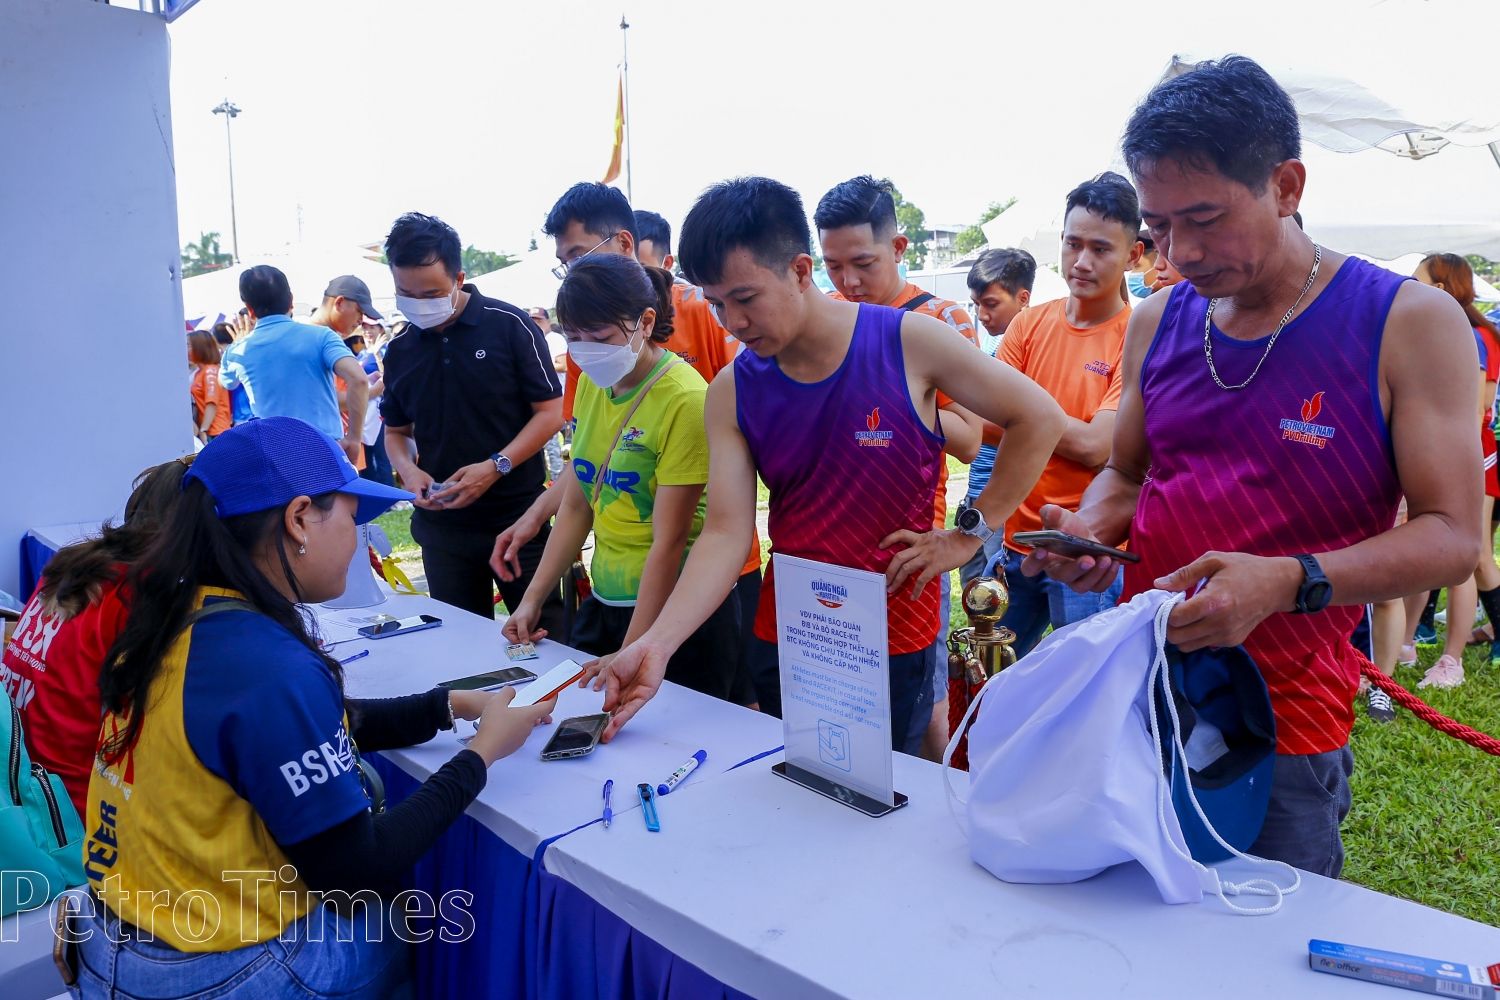 Đông đảo VĐV đến sớm để nhận số Bib của Giải chạy Quảng Ngãi Marathon - Cúp BSR năm 2023